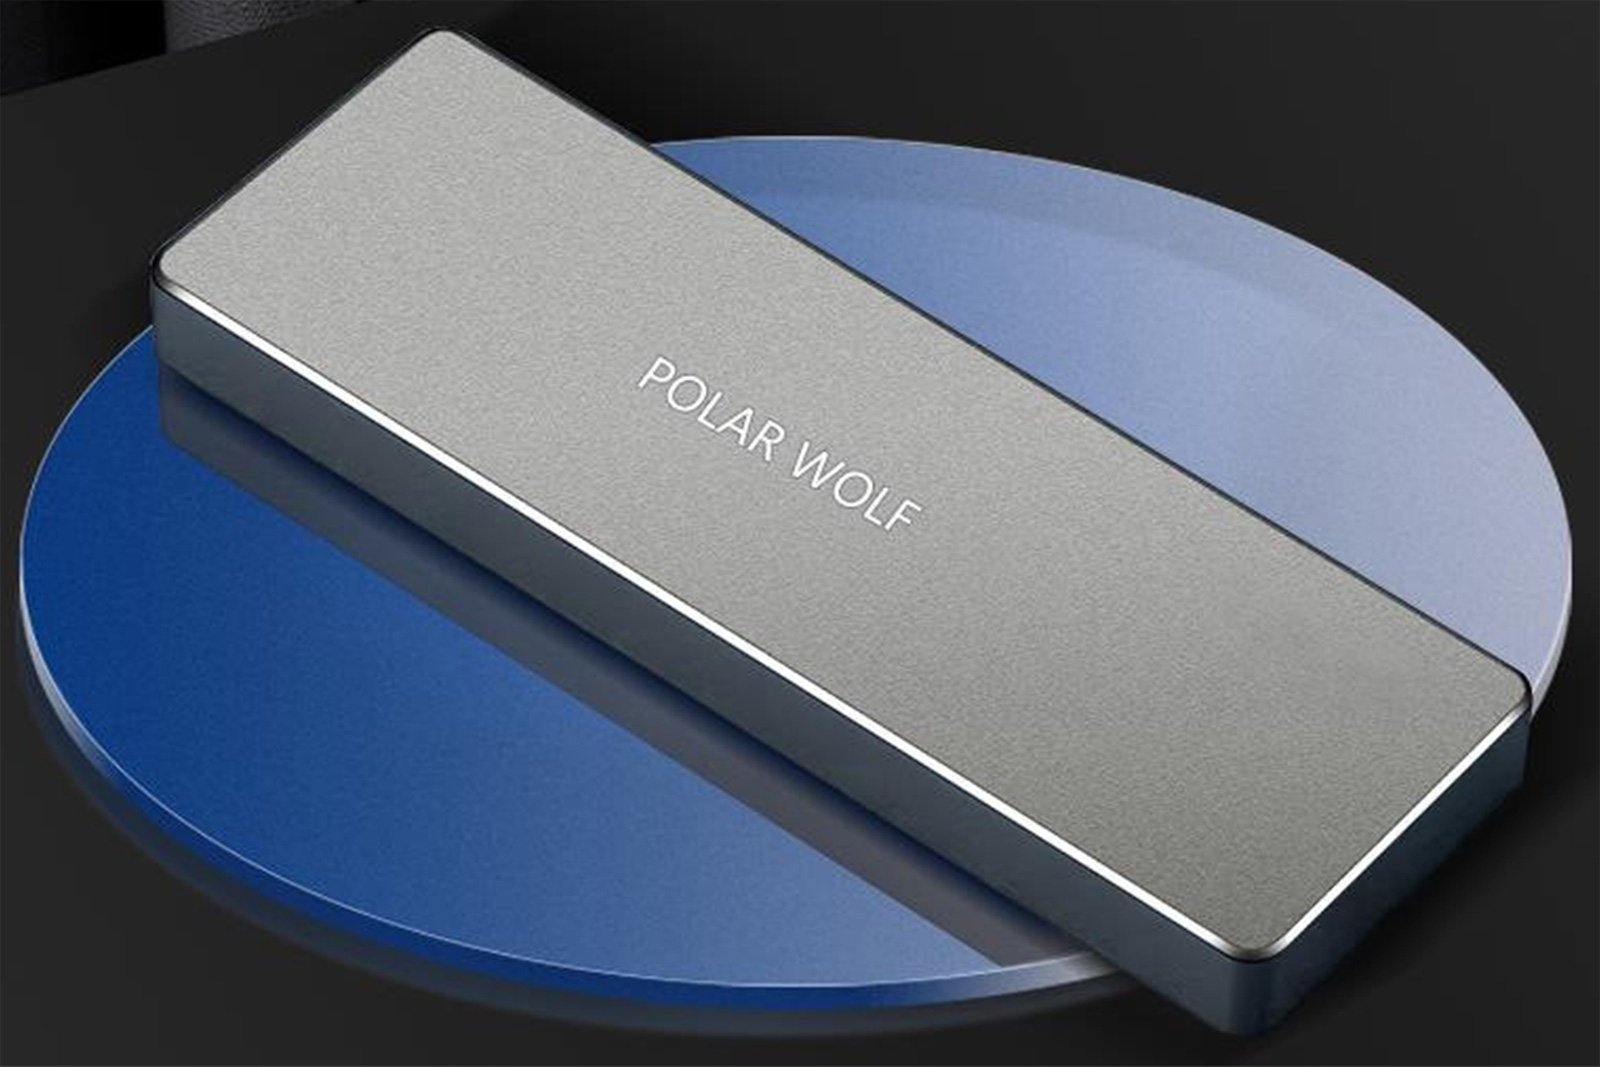 Polar Wolf SSD storage